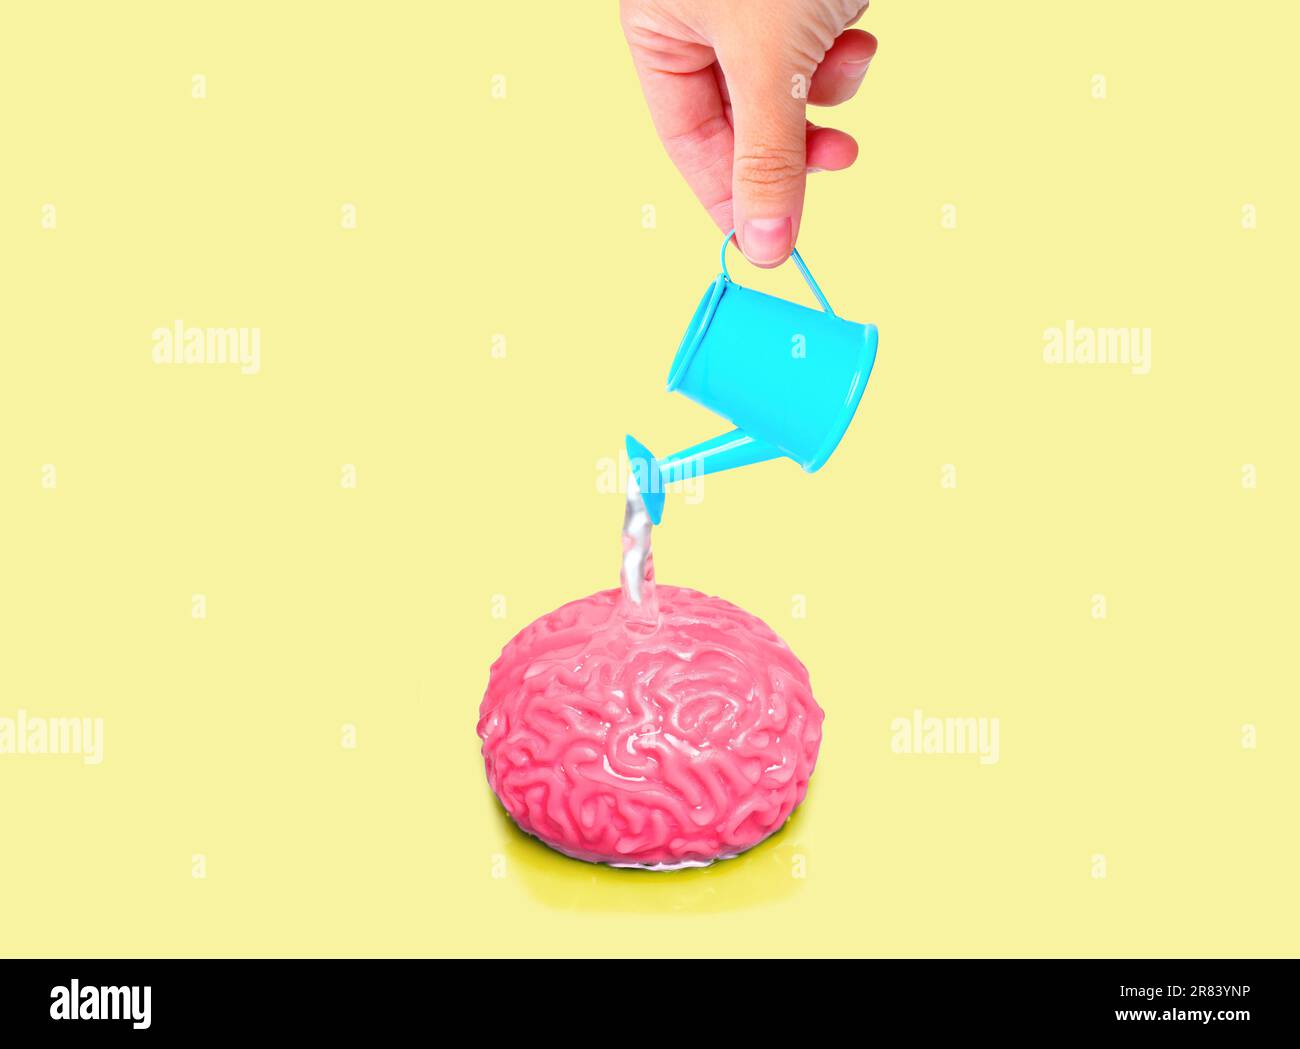 Die Hand gießt vorsichtig Wasser aus der Miniatur-Gießkanne über das Gehirnmodell, isoliert auf gelbem Hintergrund. Erziehung, Neugier, Entwicklung der Kindheit Stockfoto